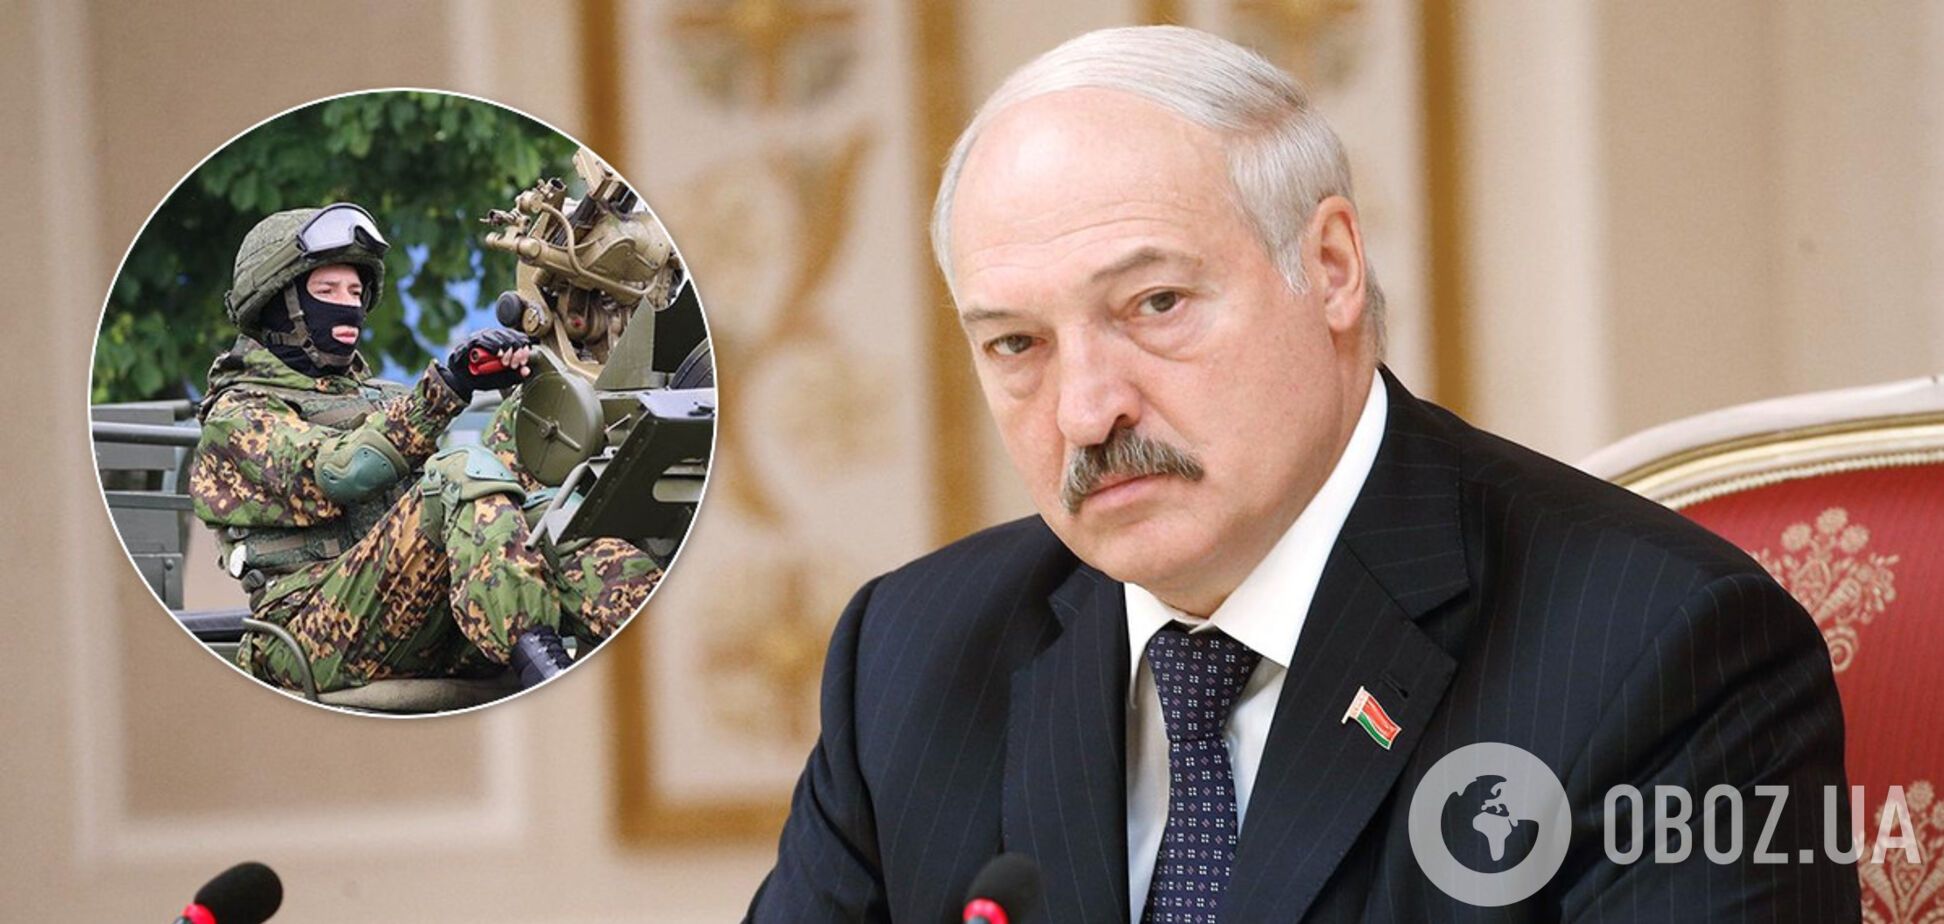 Олександр Лукашенко наказав військовим захистити суверенітет Білорусі